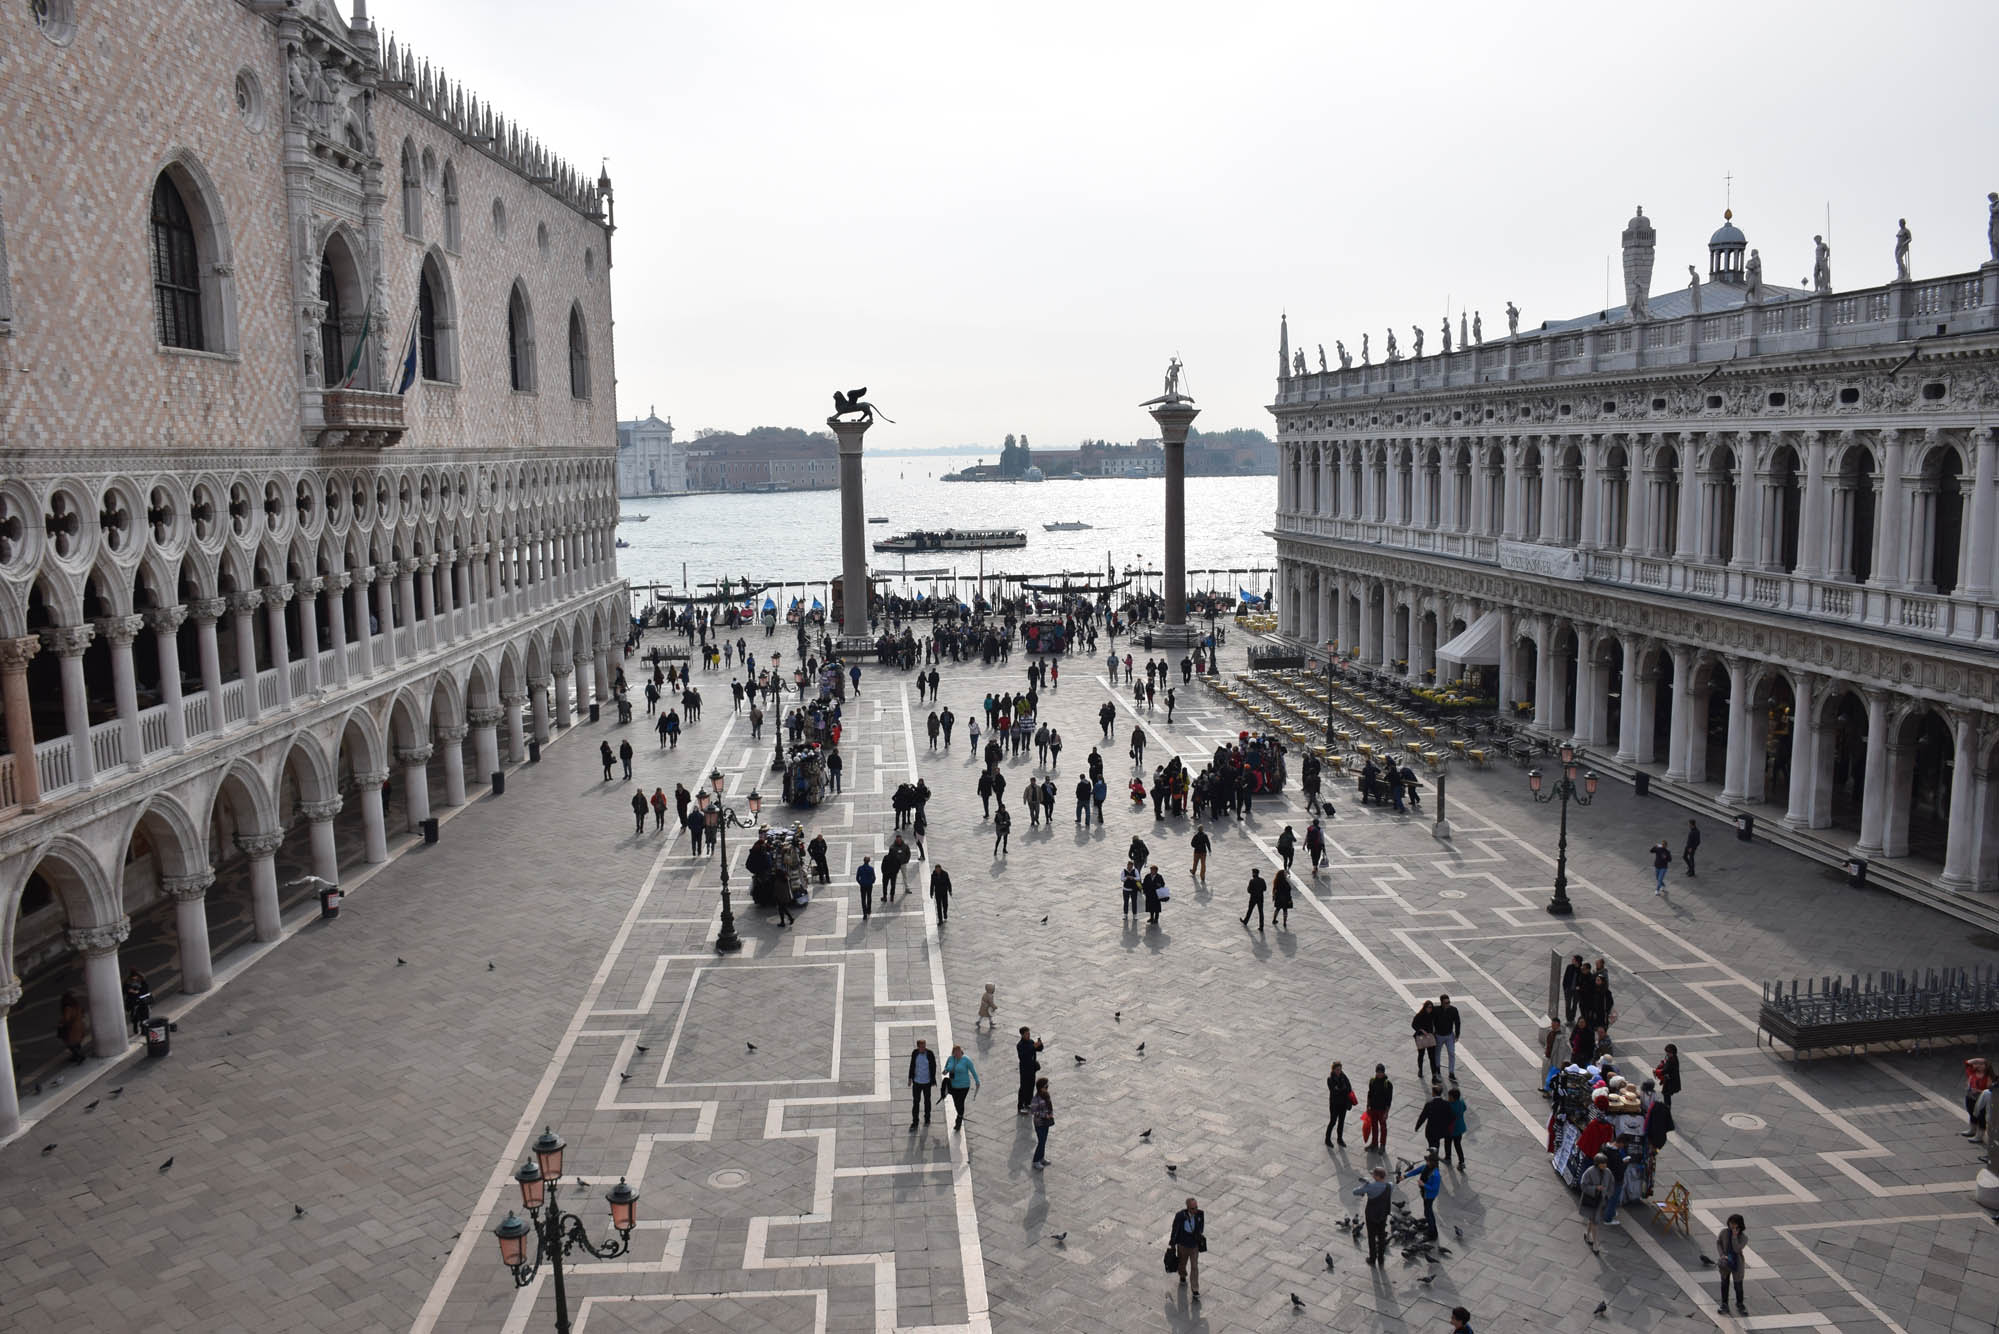 Palazzo Ducale visto do terraço da Basílica di San Marco